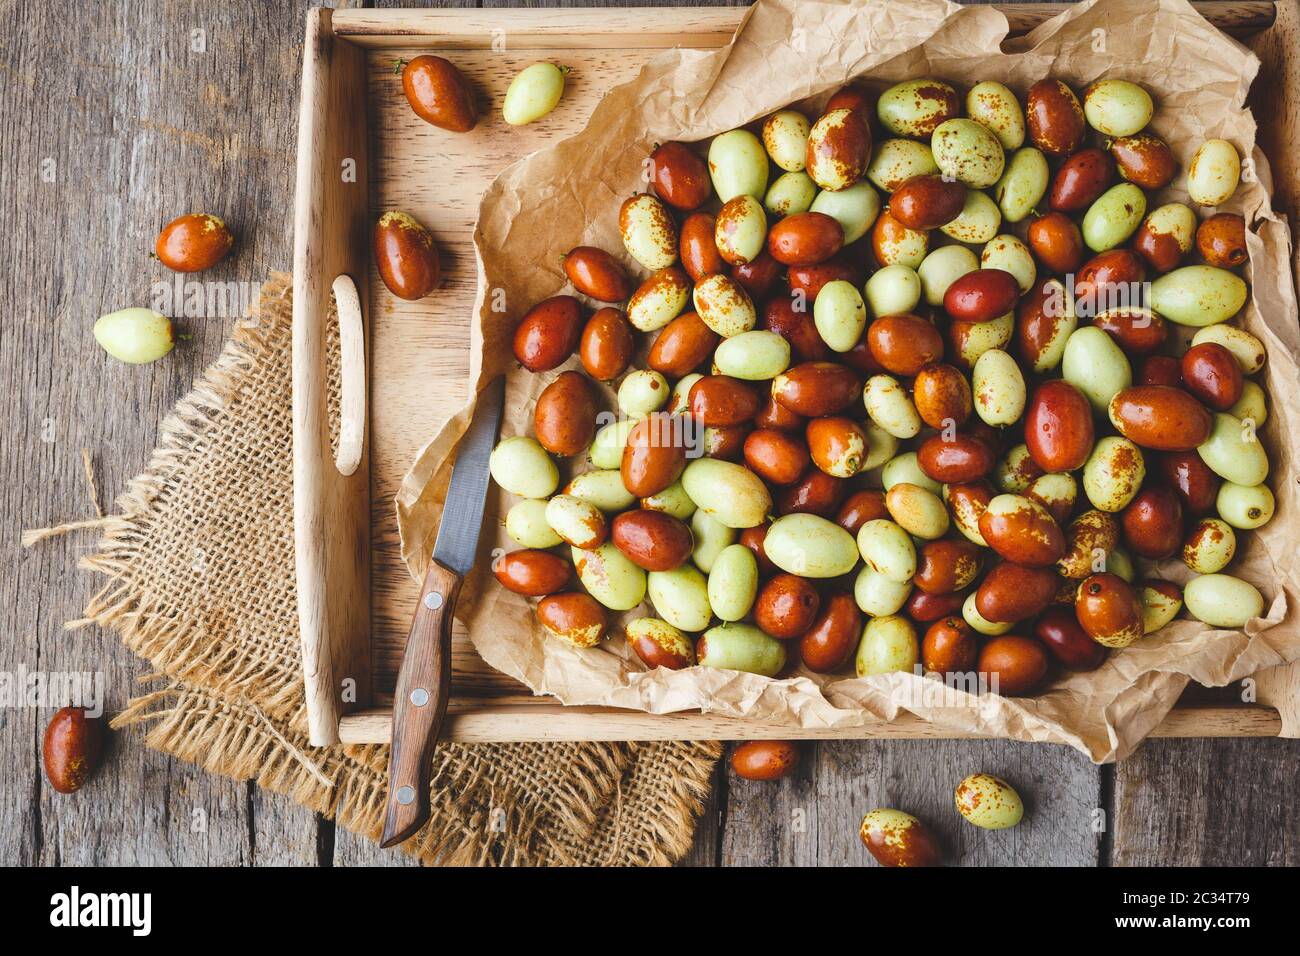 Chinese date fruits-Ziziphus jujuba fruits Stock Photo